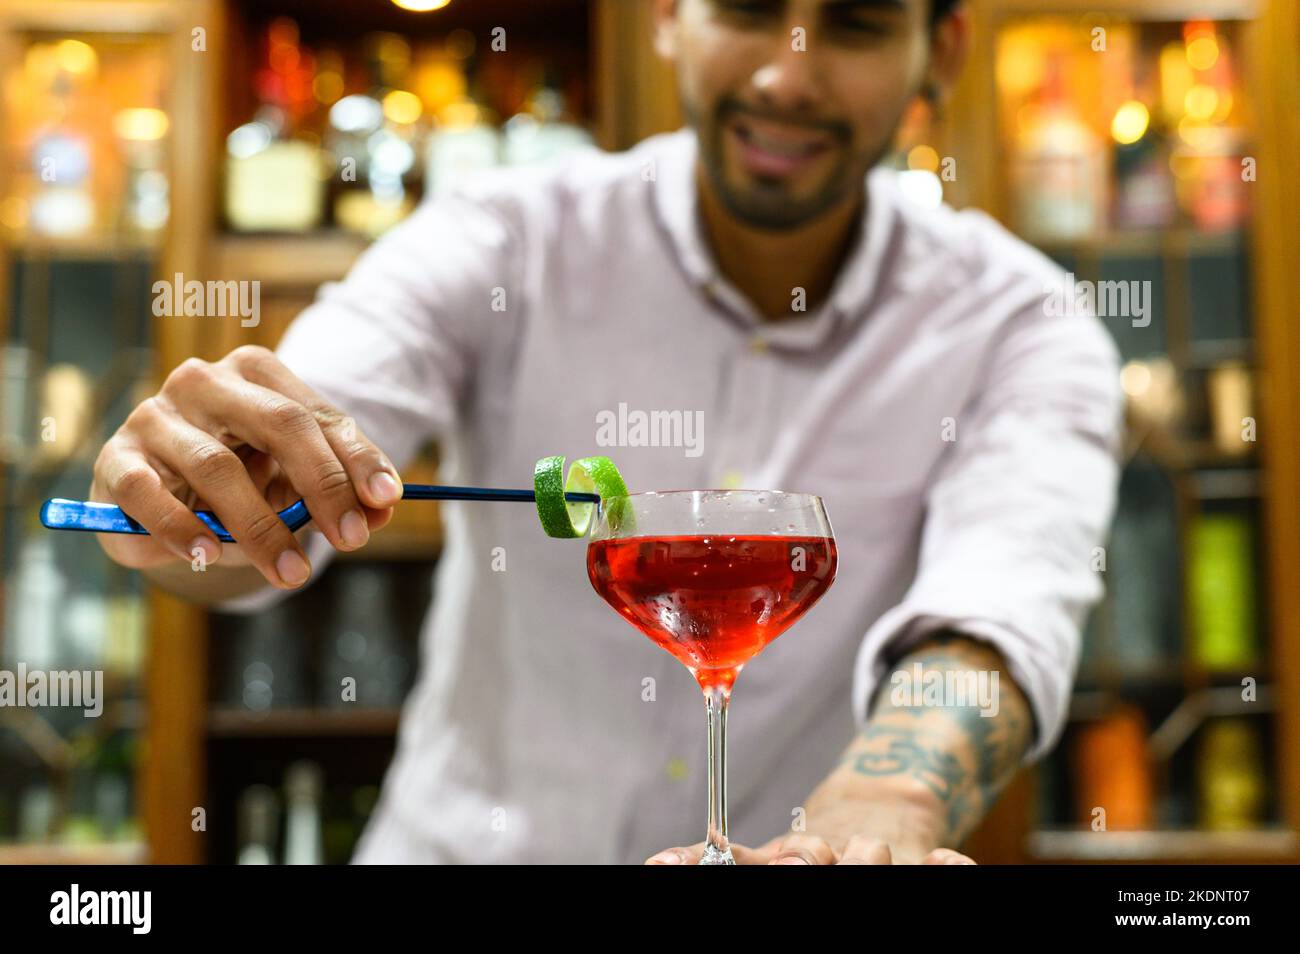 primo piano di bicchiere con bevanda rossa che barman accurata decorazione con buccia d'arancia Foto Stock